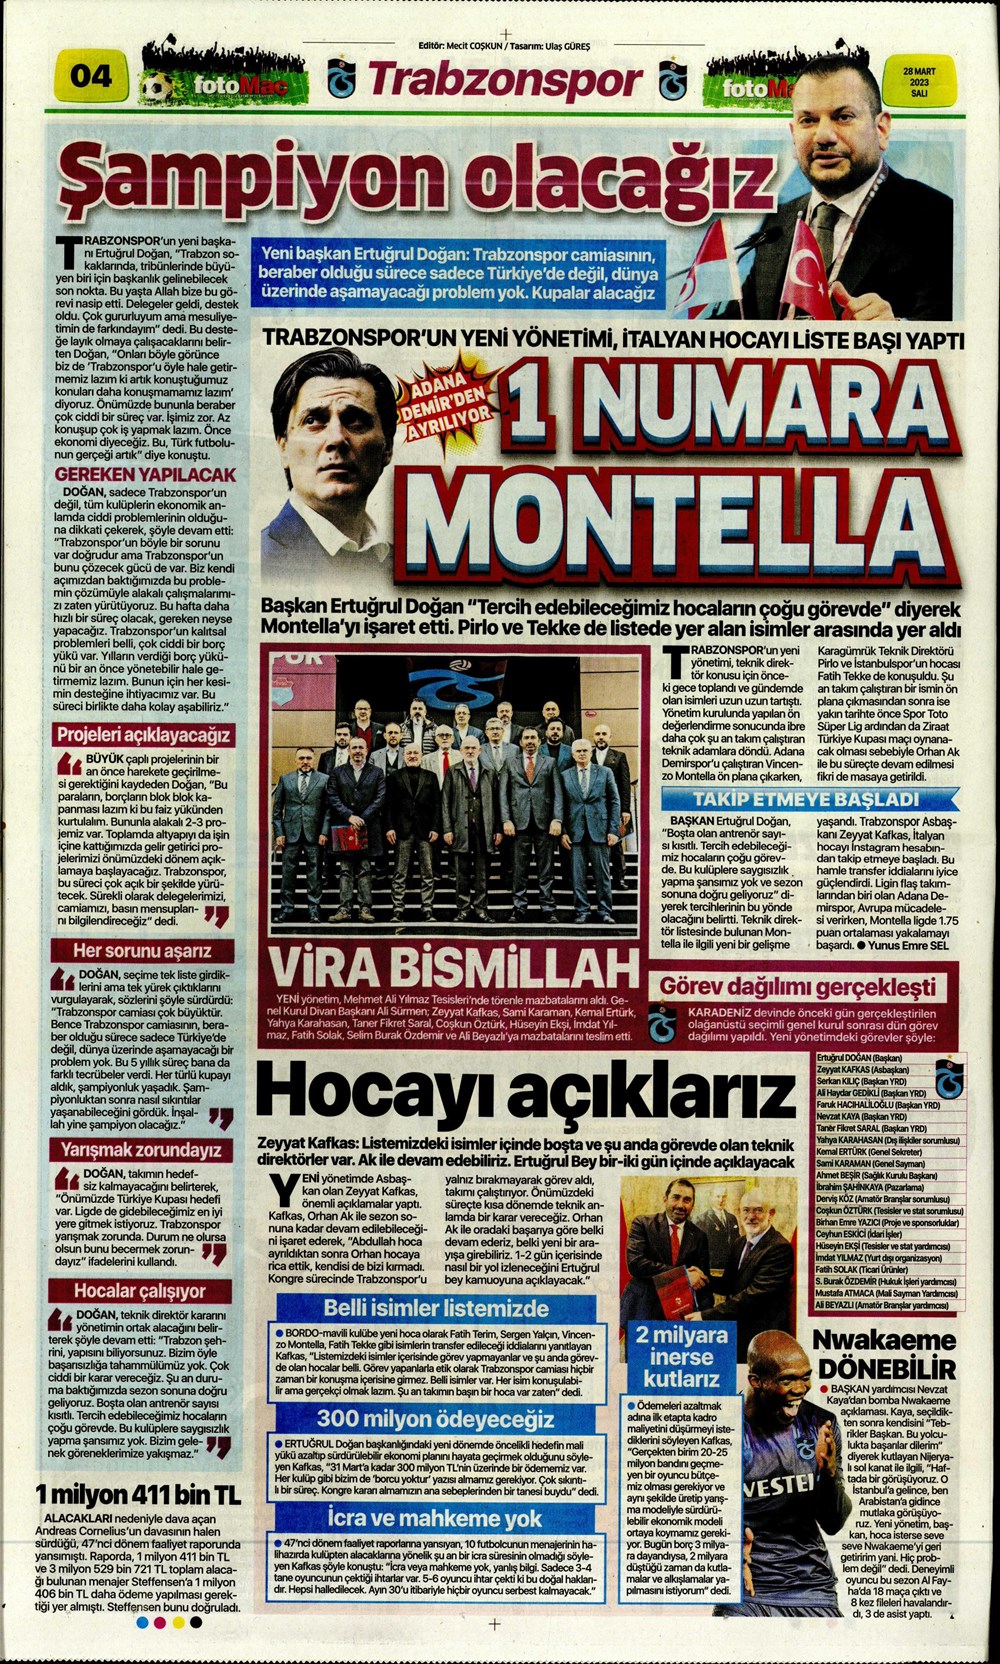 "Vurduğumuz gol olsun" - Sporun manşetleri - 13. Foto